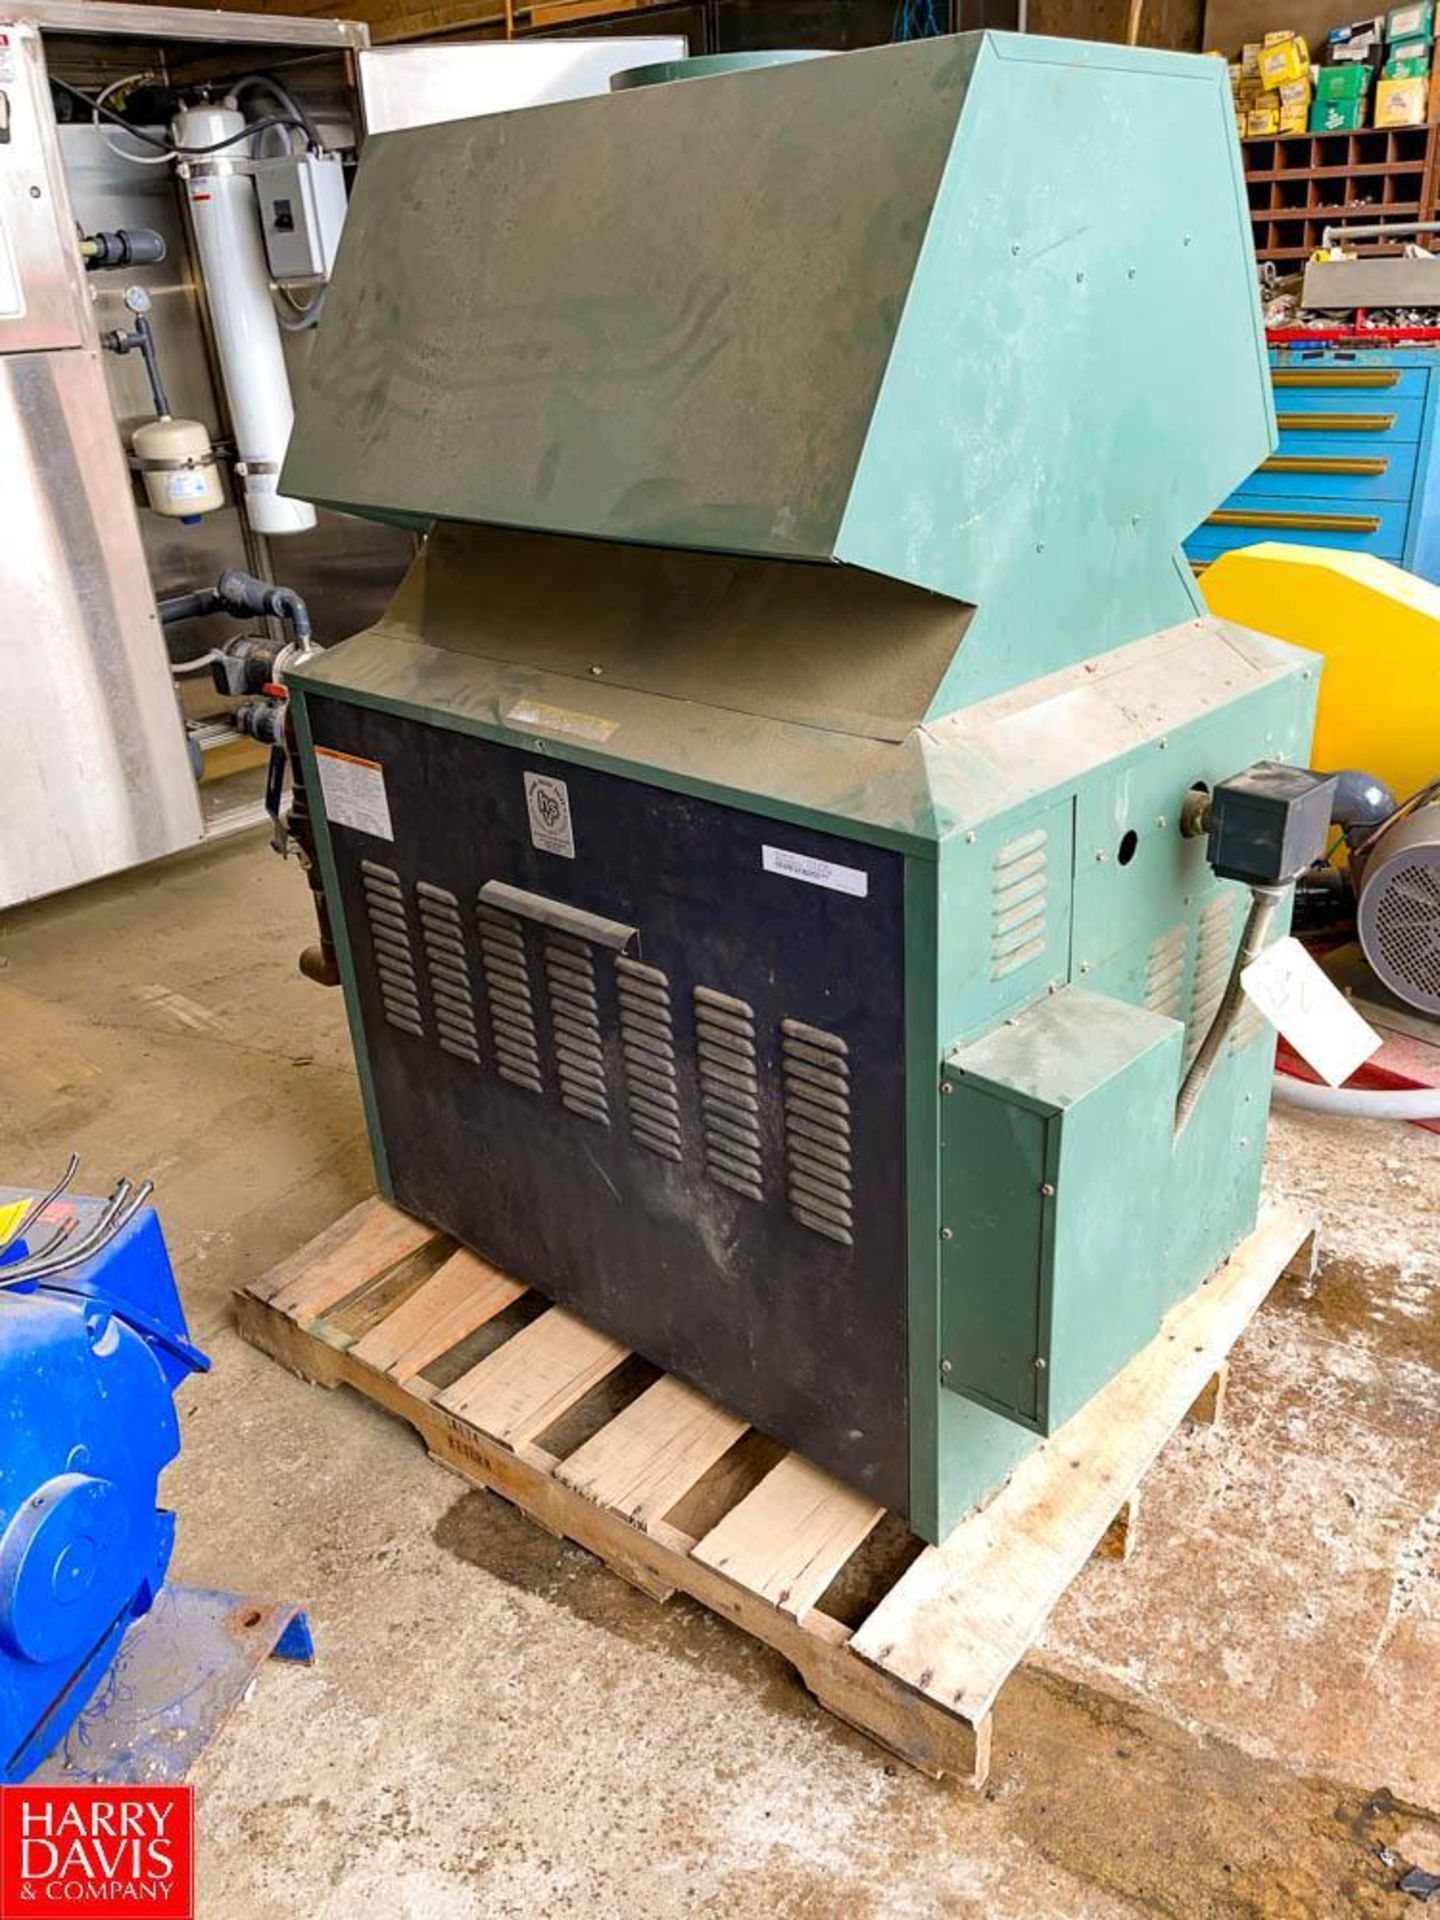 HVS Boiler, Model: WT2-972B, S/N 1312369196 (Subject to Bulk Bid) - Rigging Fee: $350